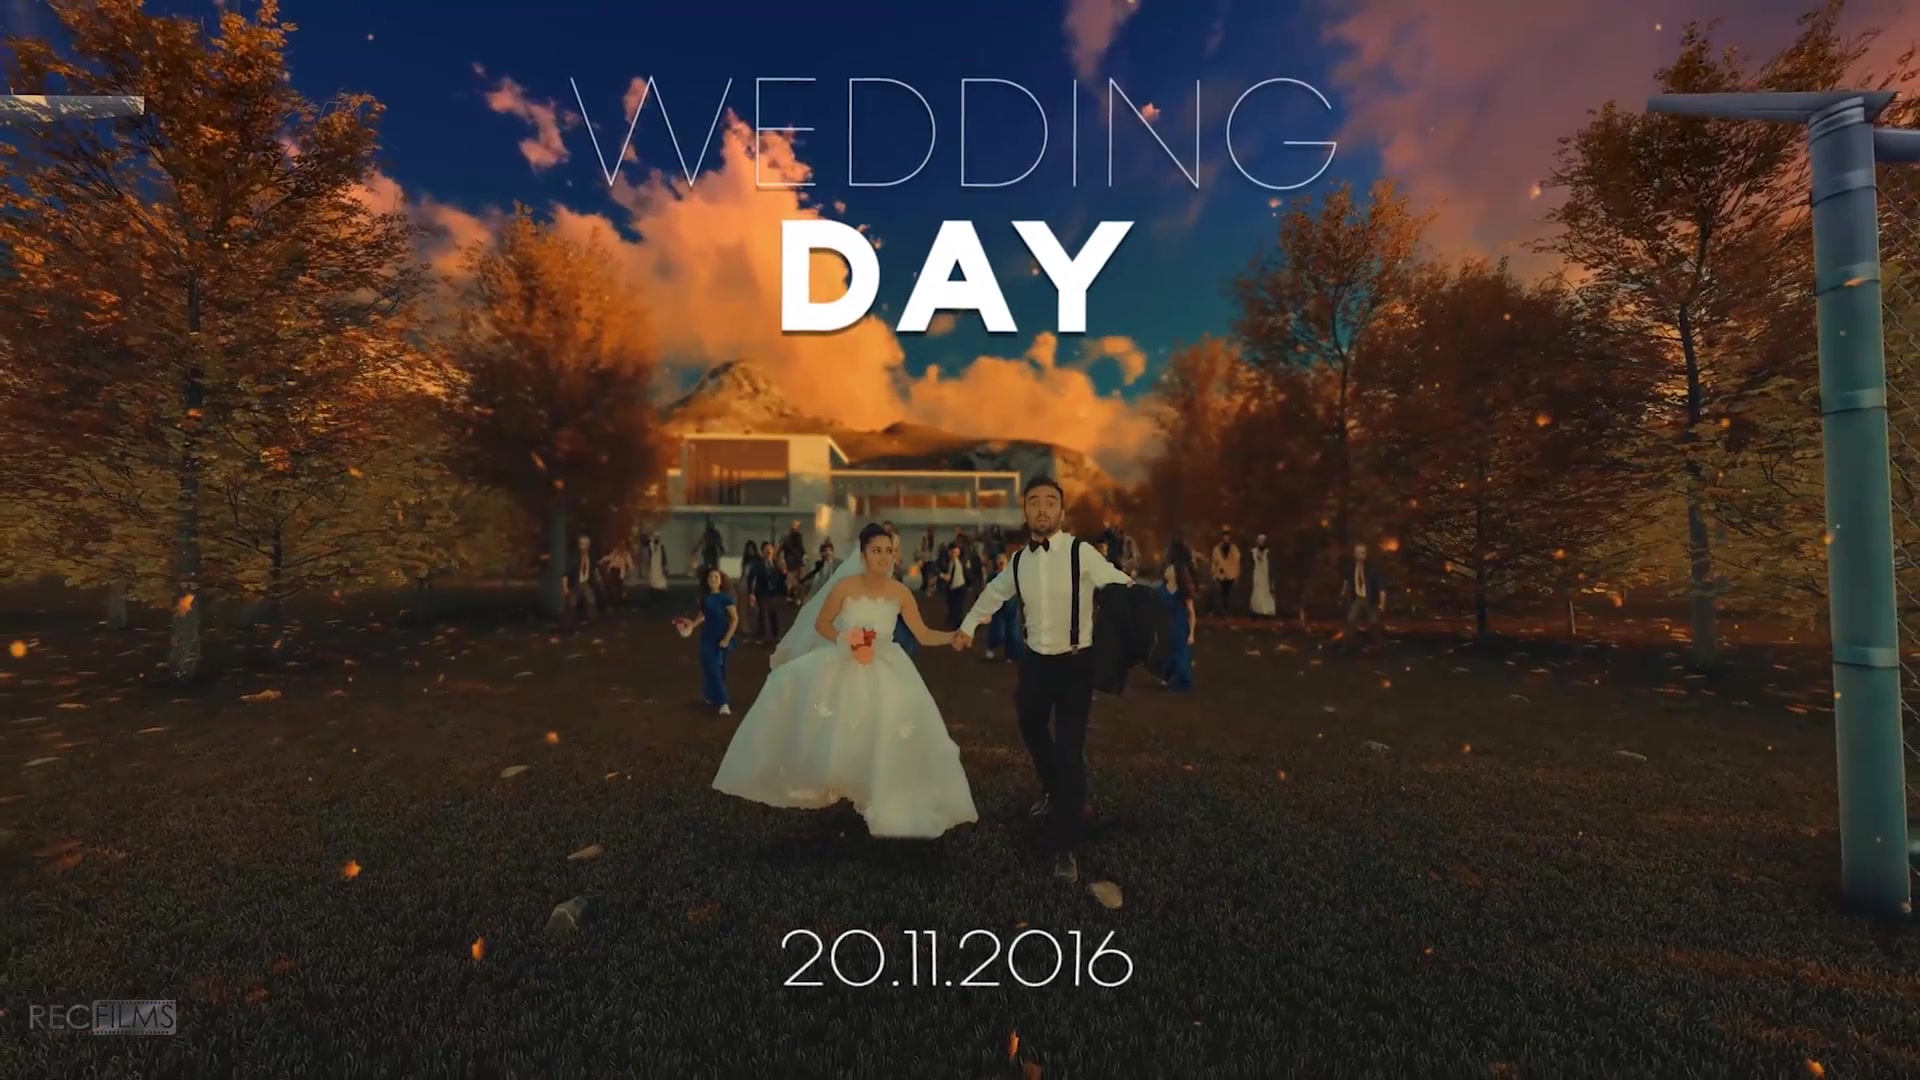 Wedding Day Fantasy Poster Teaser Maker - Download Videohive 19033198